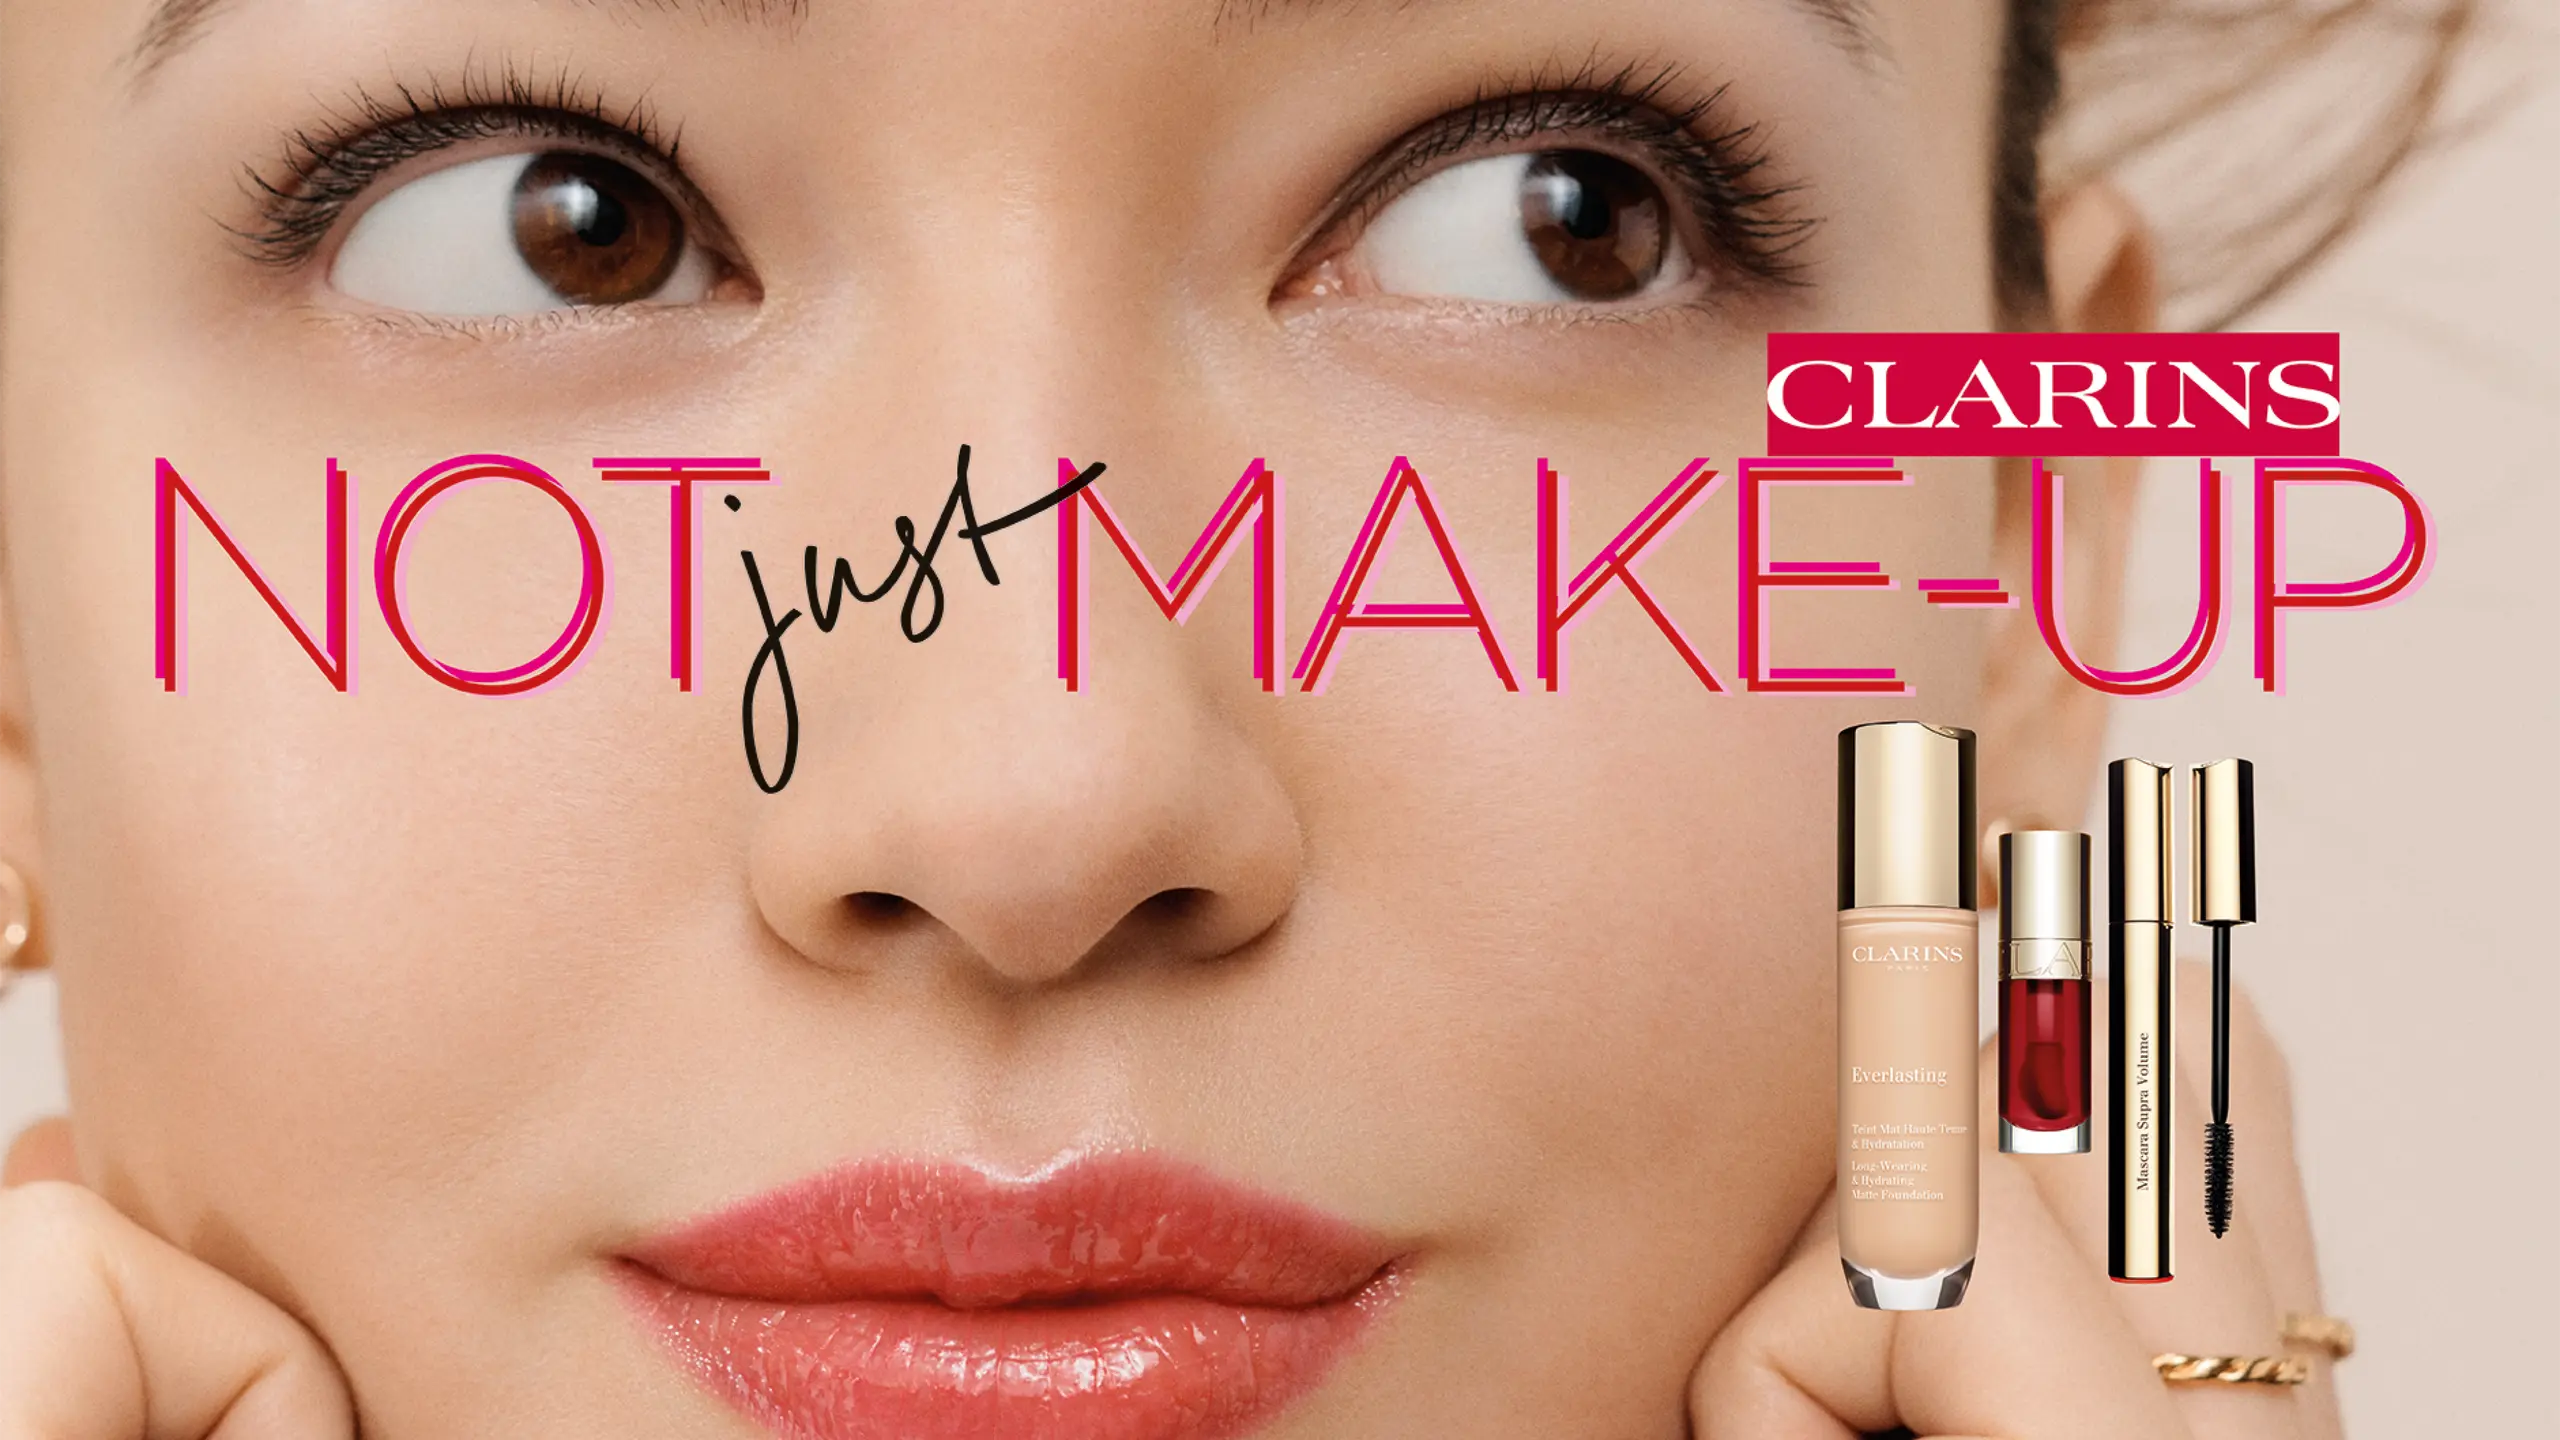 Strahlende Clarins Looks + Gewinne 1 von 3 Make-up Kits!